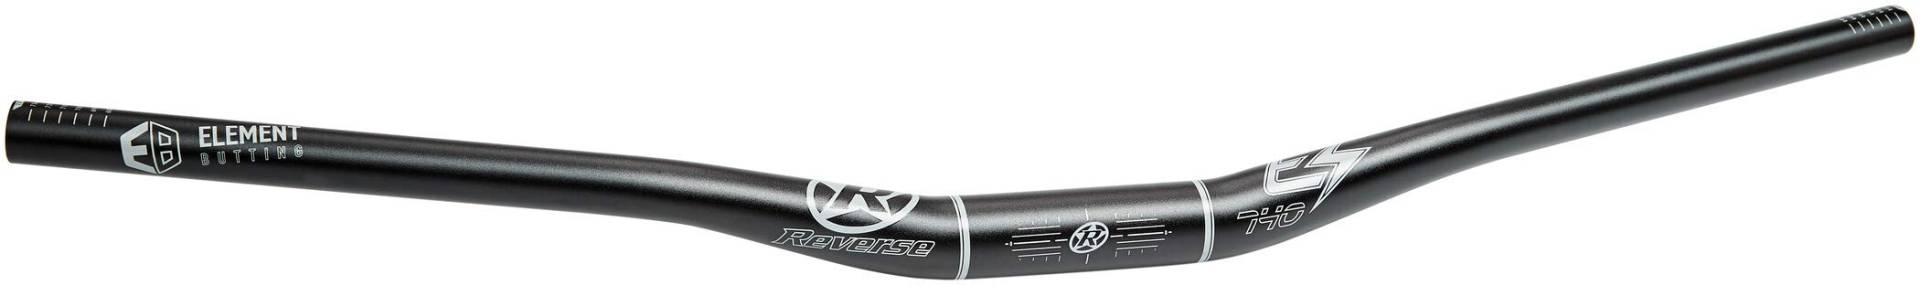 Reverse E-Element Ergo Fahrrad Lenker 31.8mm schwarz/grau: Größe: 31.8mm 40mm Rise 740mm von Reverse